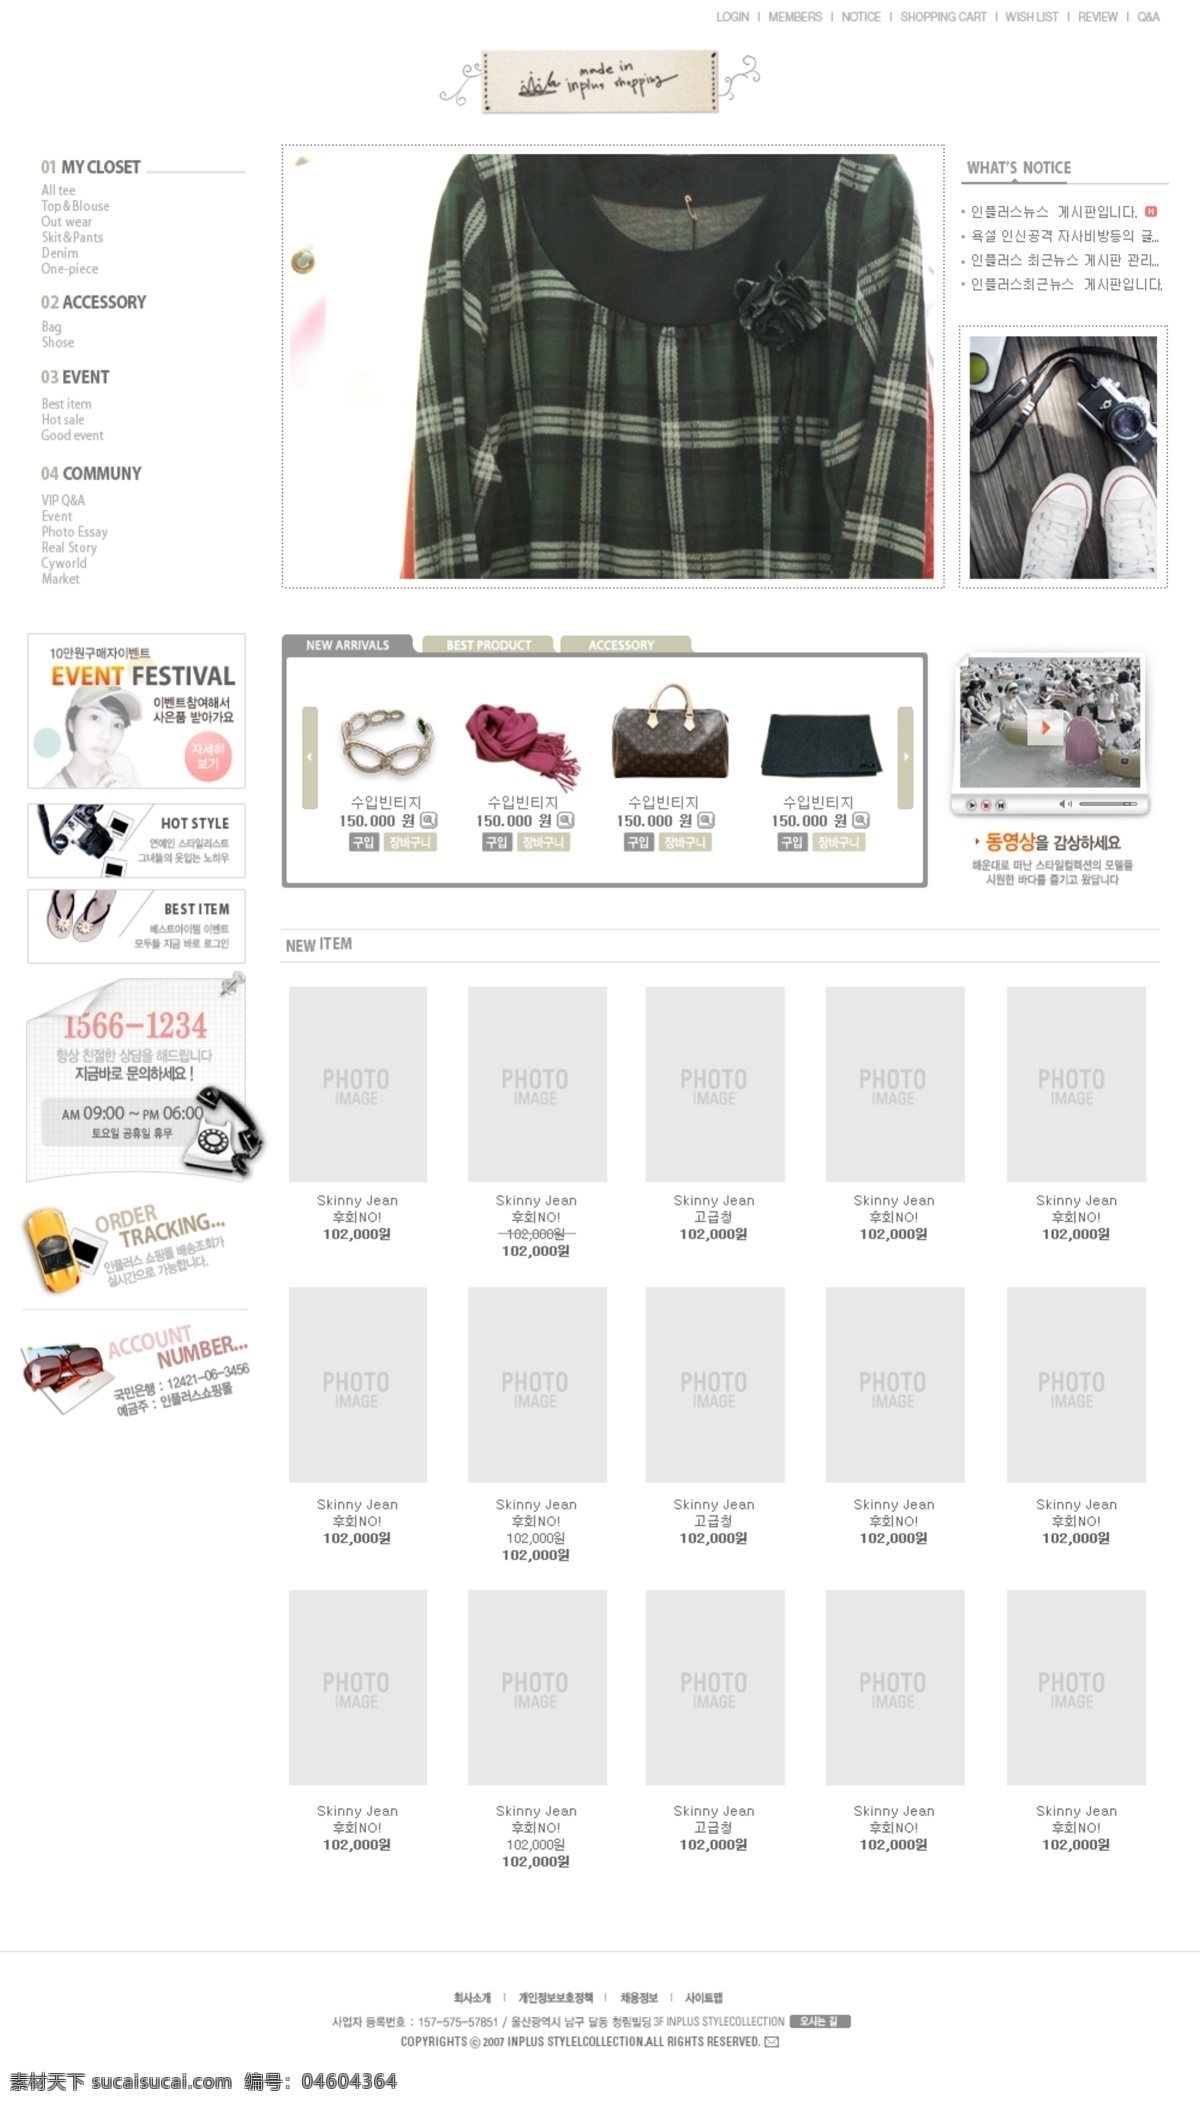 女性 服装 饰品 商城 网页模板 韩国风格 灰色色调 网页素材